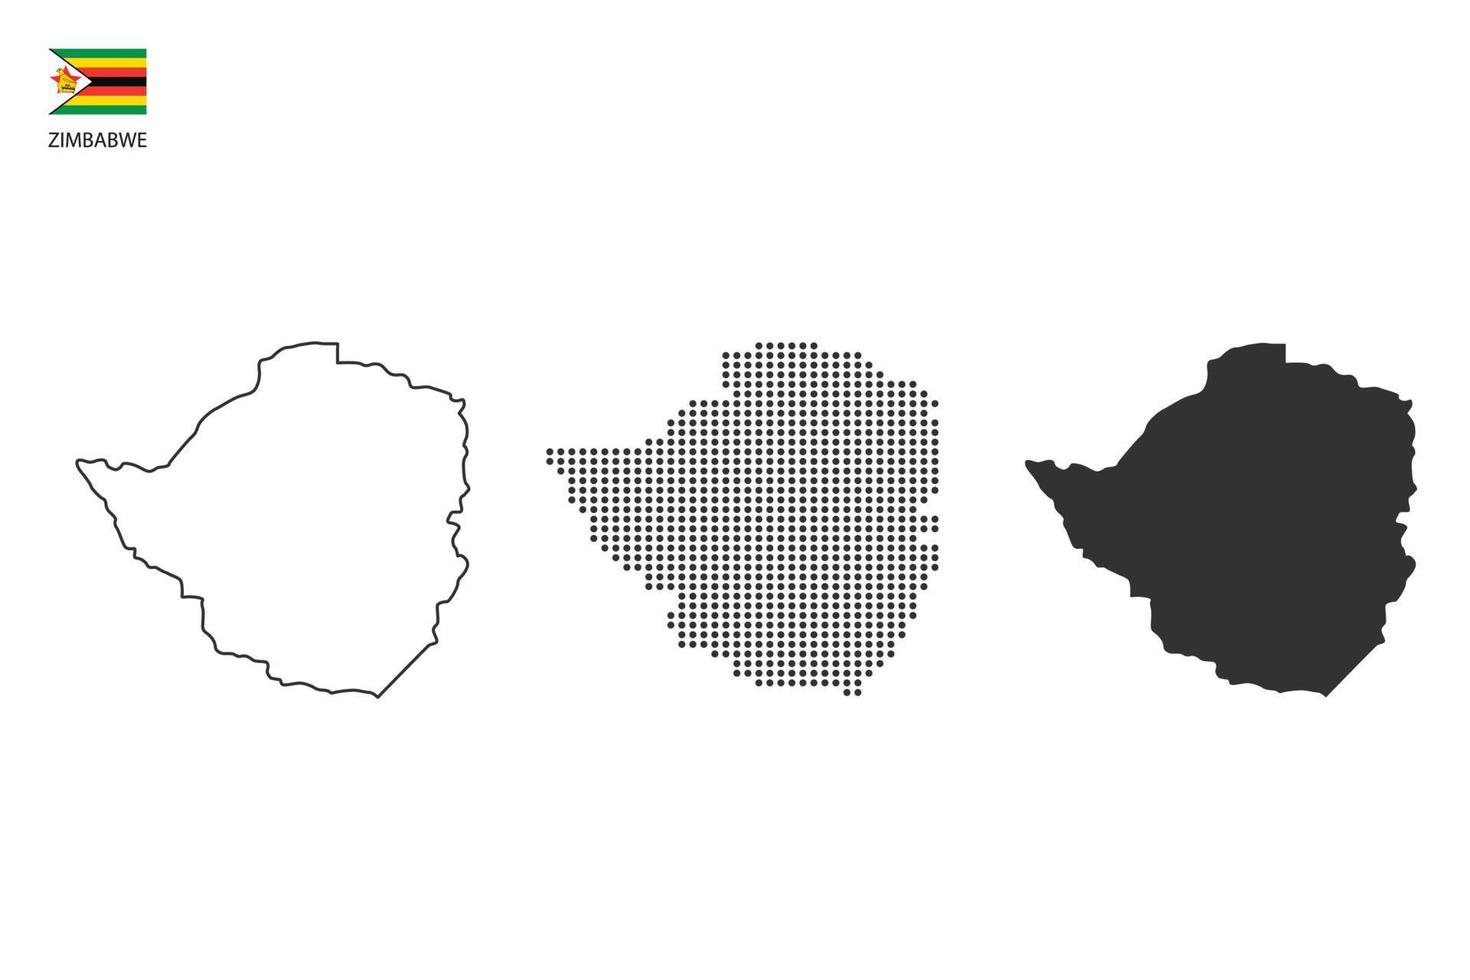 3 versiones del vector de la ciudad del mapa de zimbabwe por estilo de simplicidad de contorno negro delgado, estilo de punto negro y estilo de sombra oscura. todo en el fondo blanco.